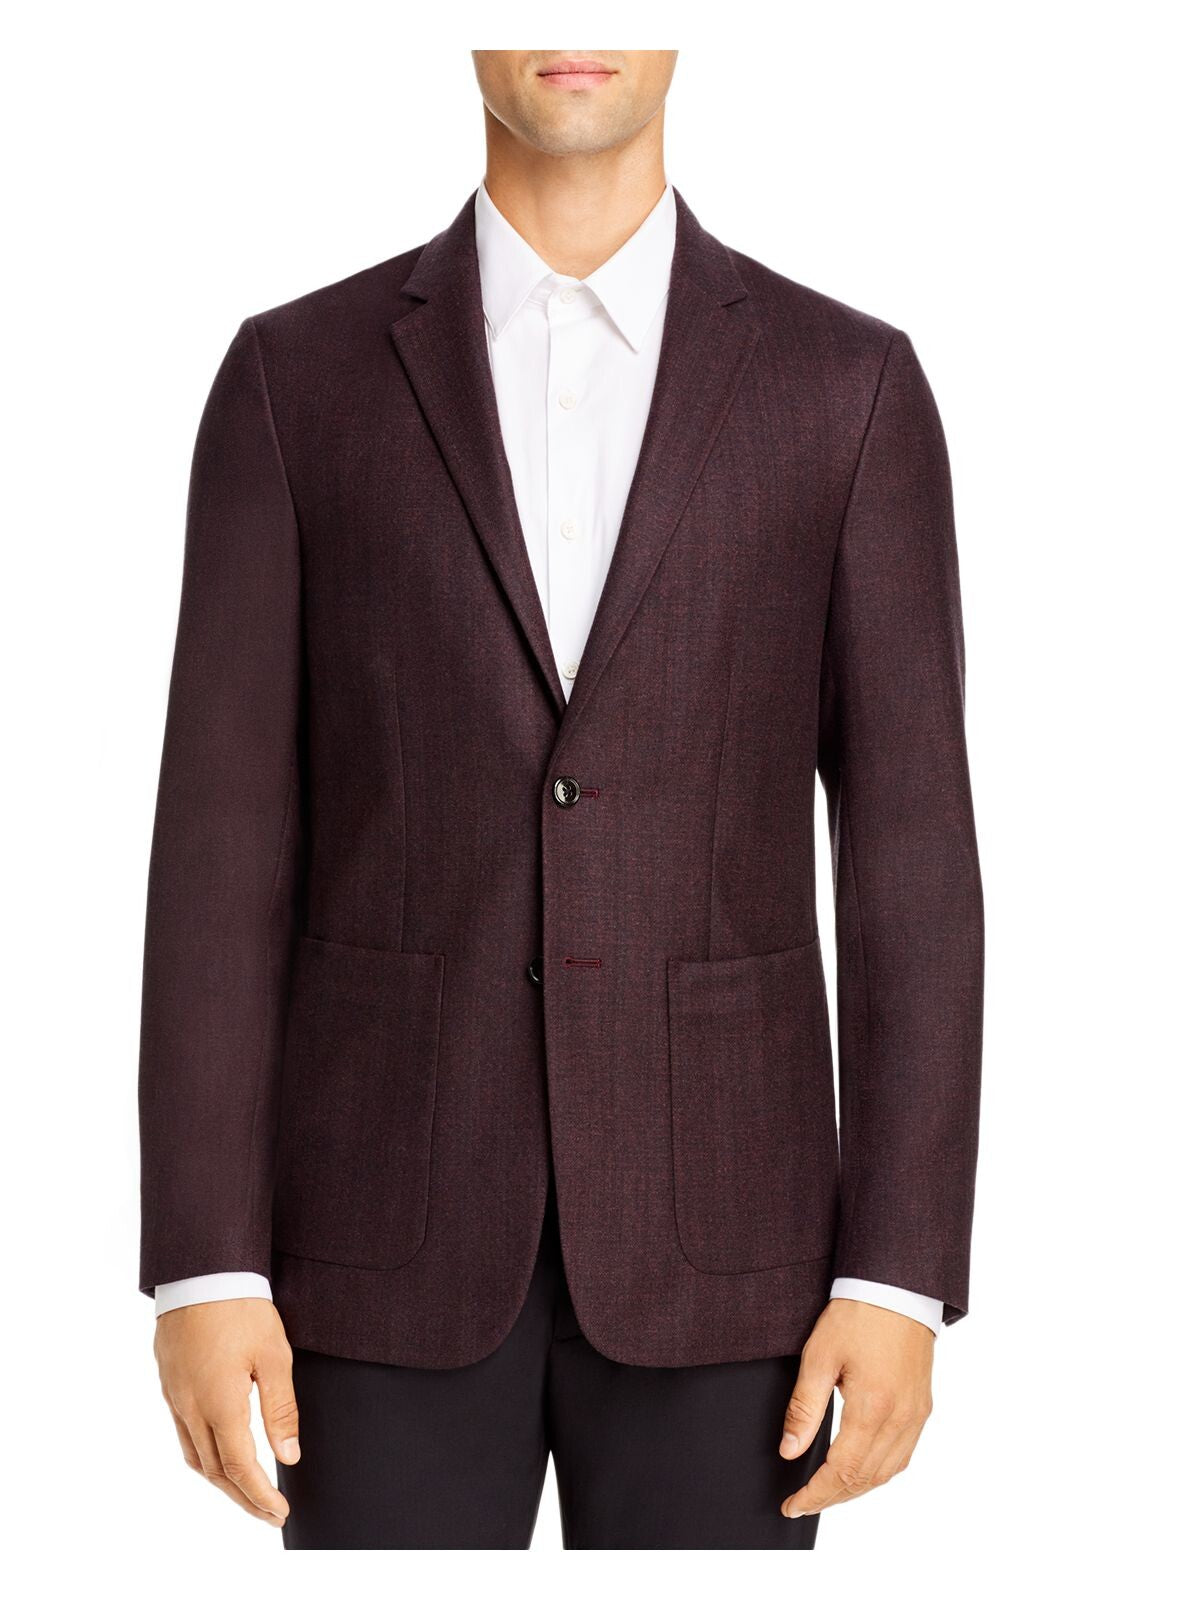 THEORY Mens Gansevoort Maroon Single Breasted, Slim Fit Wool Blend Suit Separate Blazer Jacket 42L